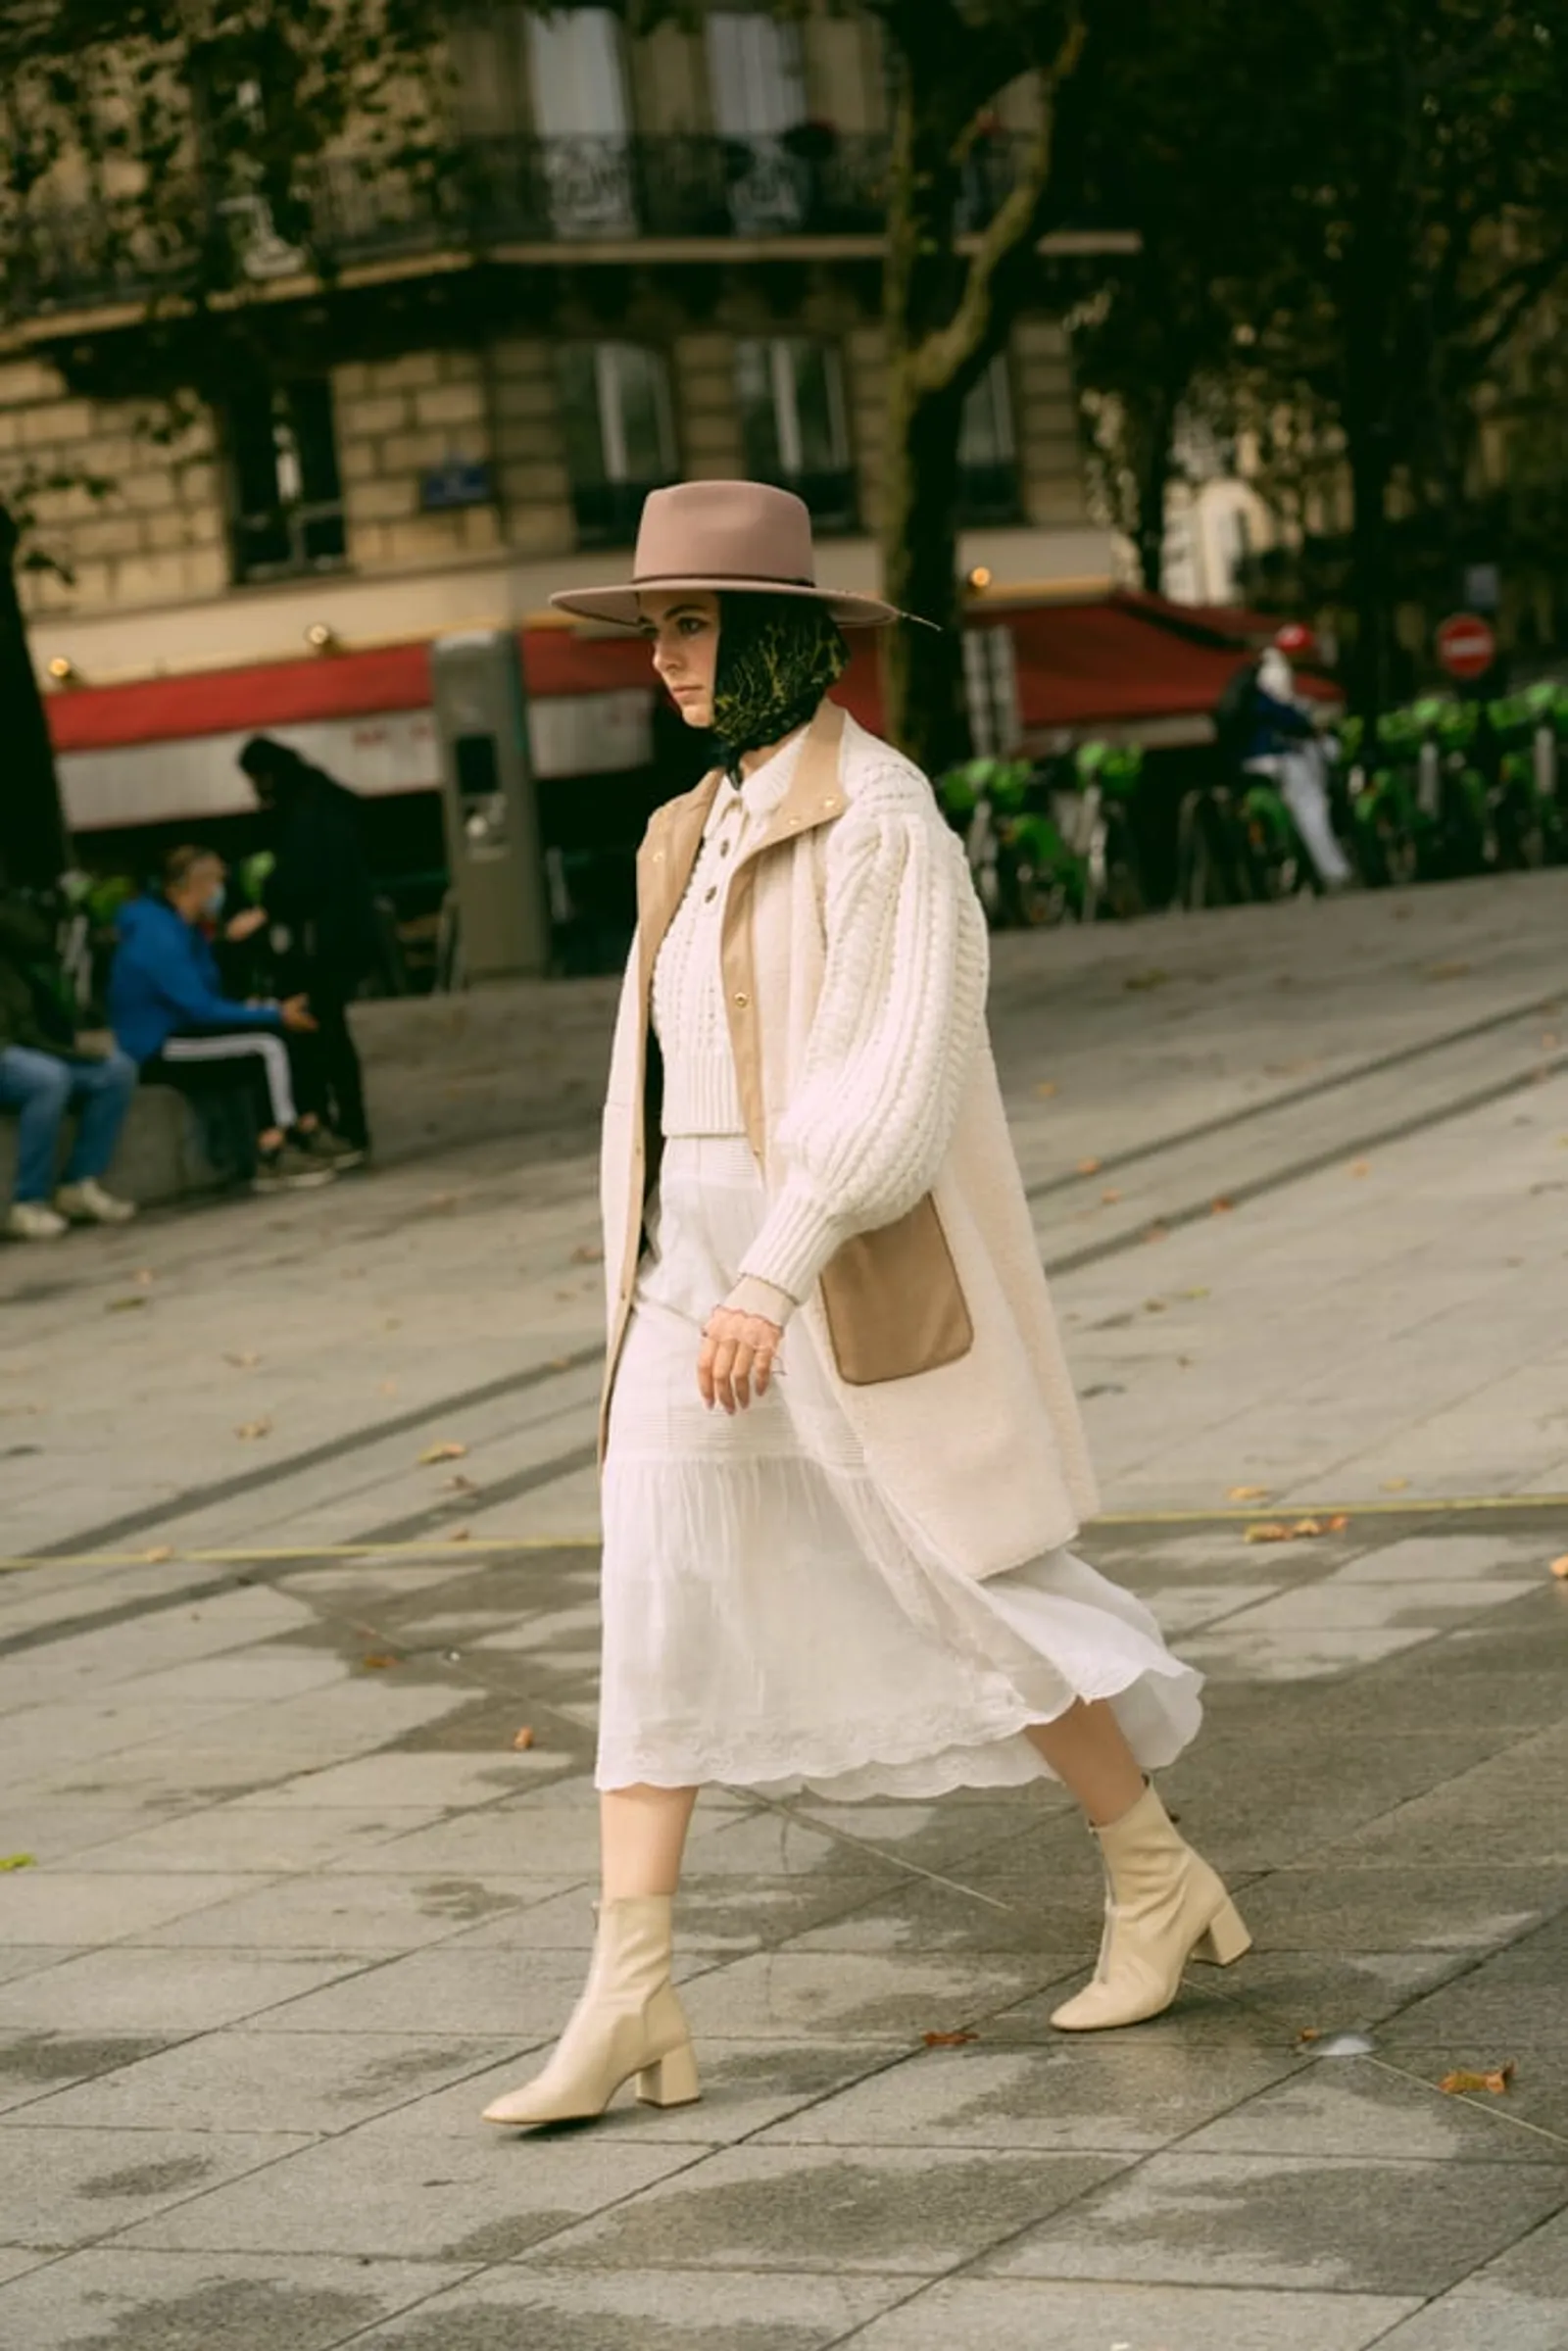 Tampil Chic di Musim Dingin pakai Outfit Warna Putih